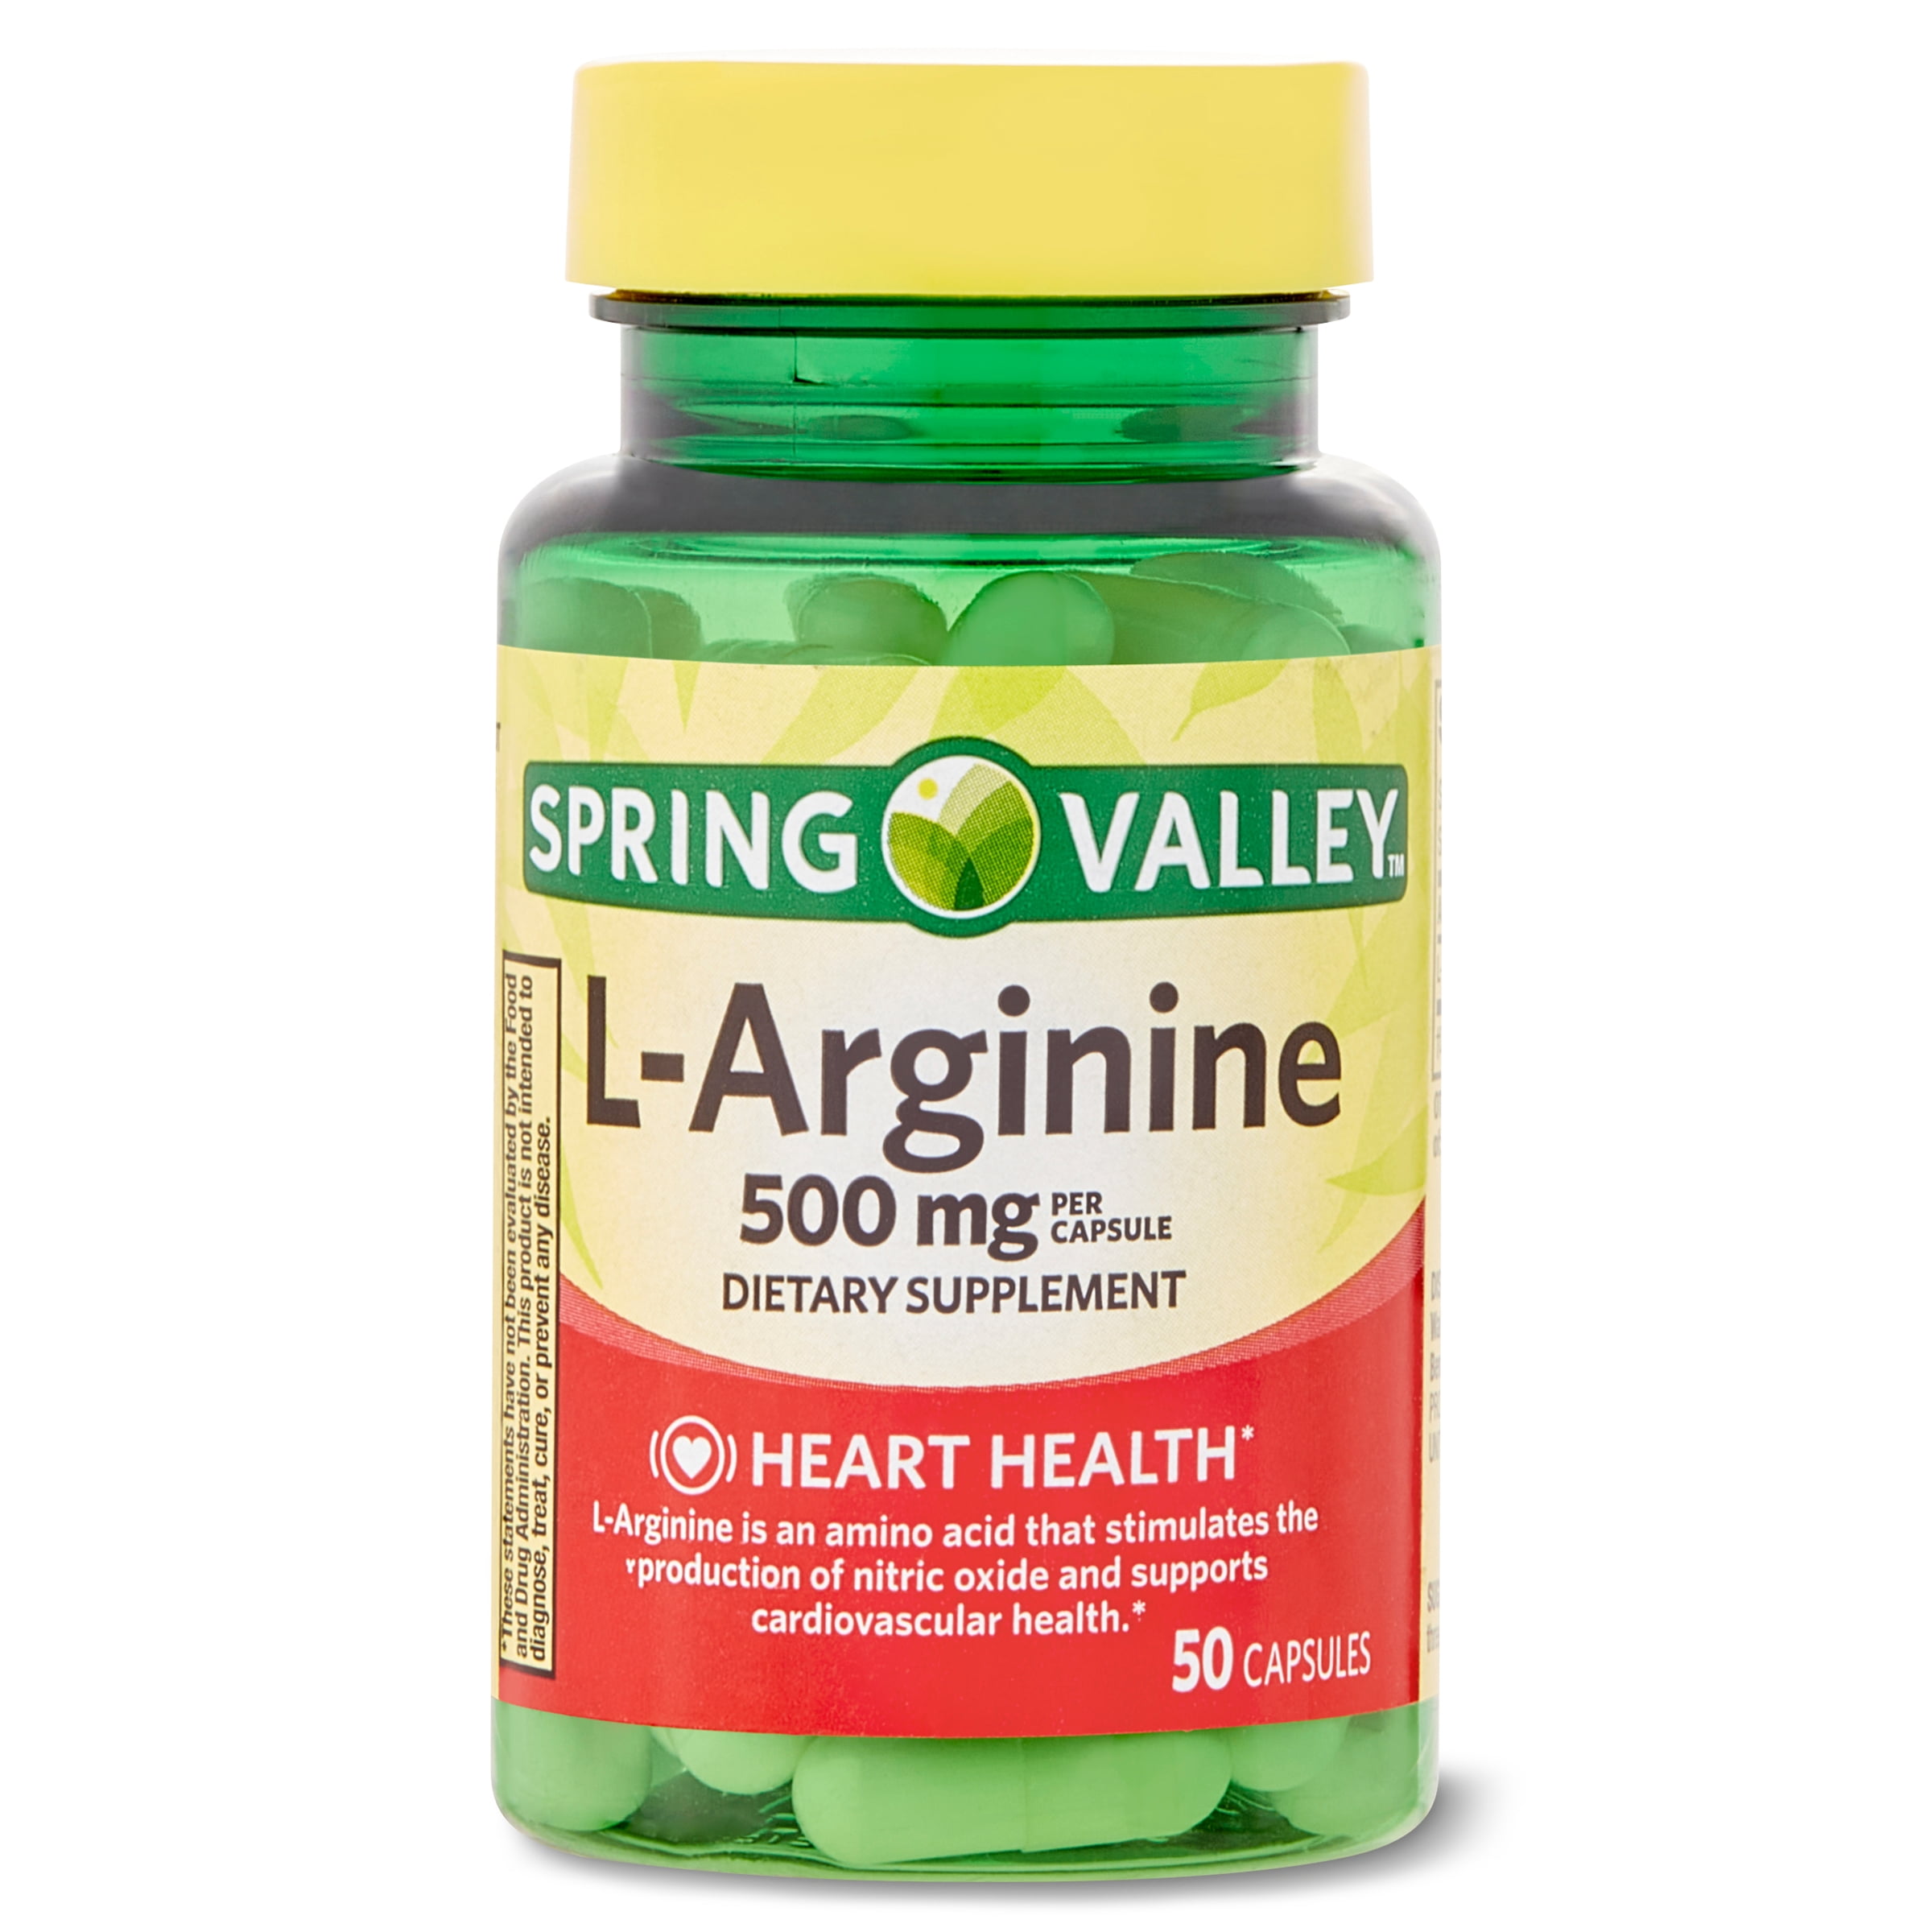 Spring Valley L Arginine Amino Acid Supplements, 1 Capsule Per Serving, 50 Ct